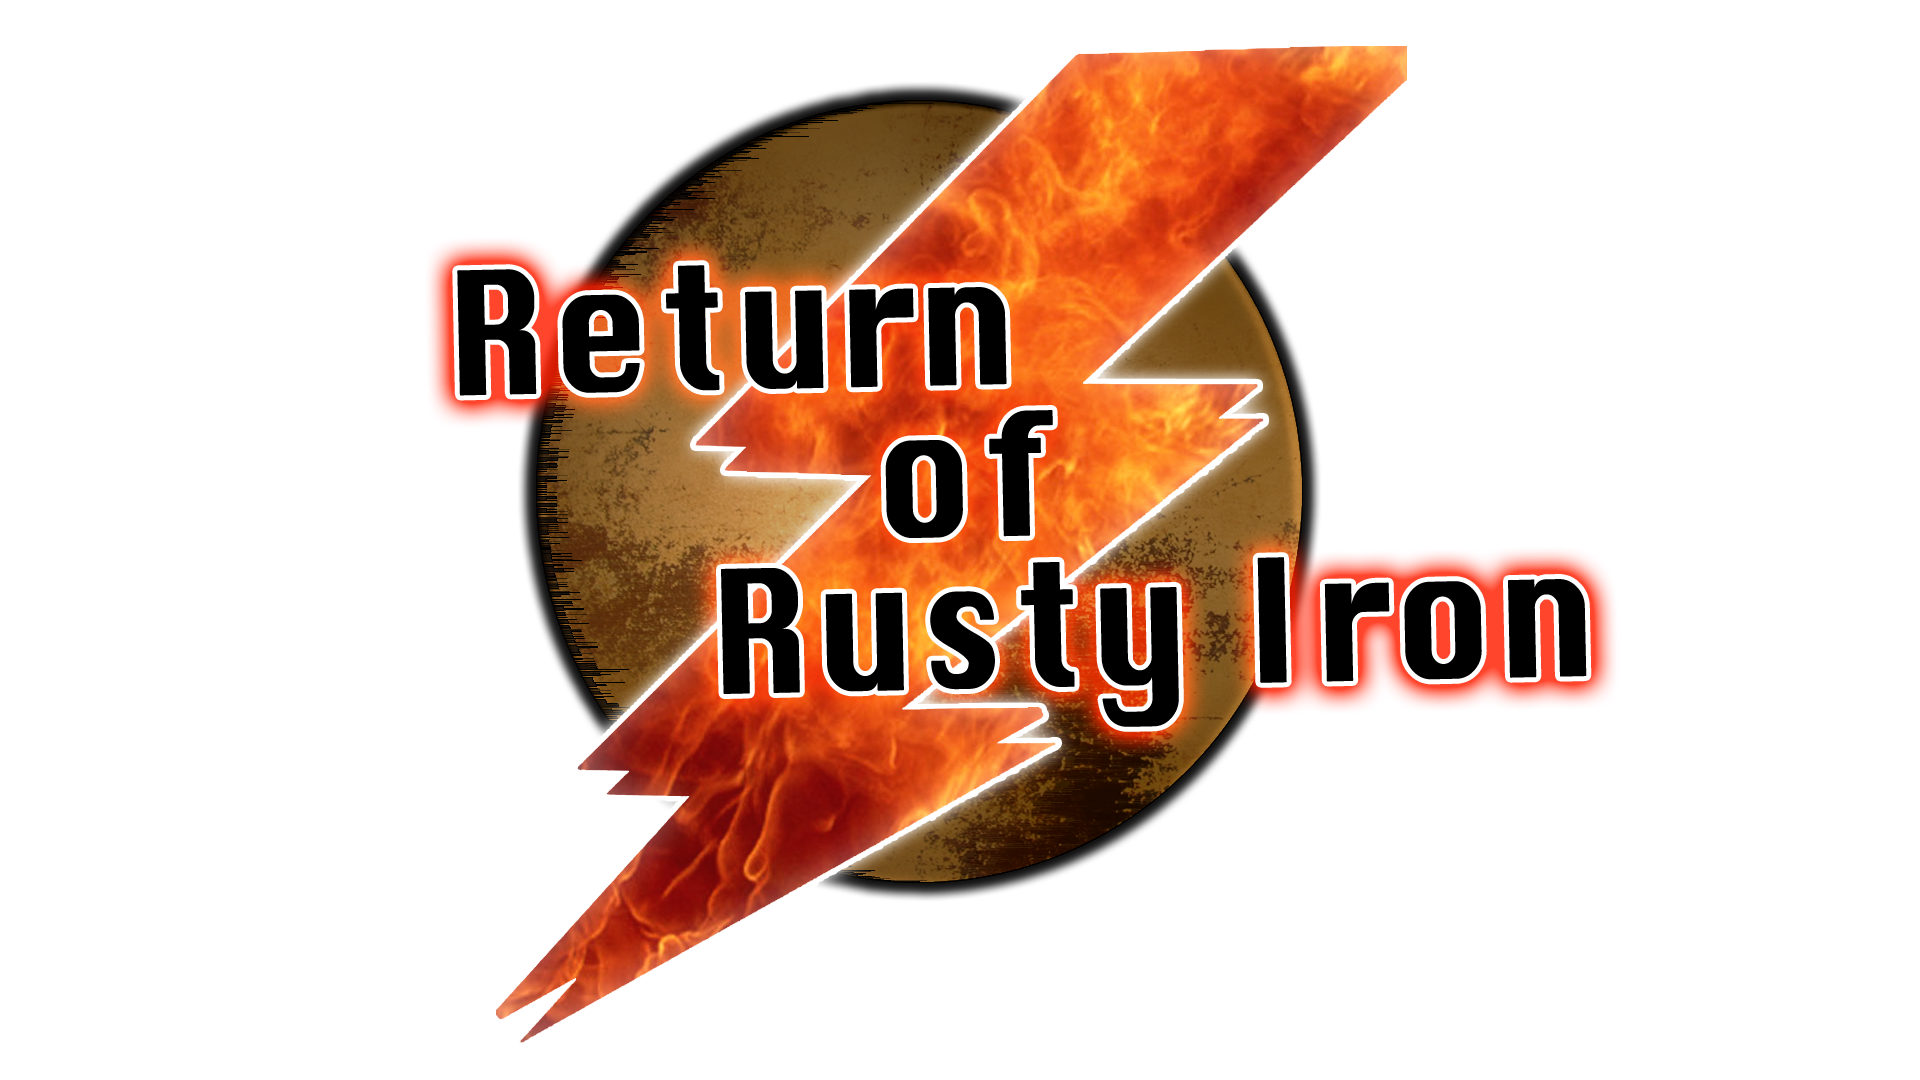 Return of rust